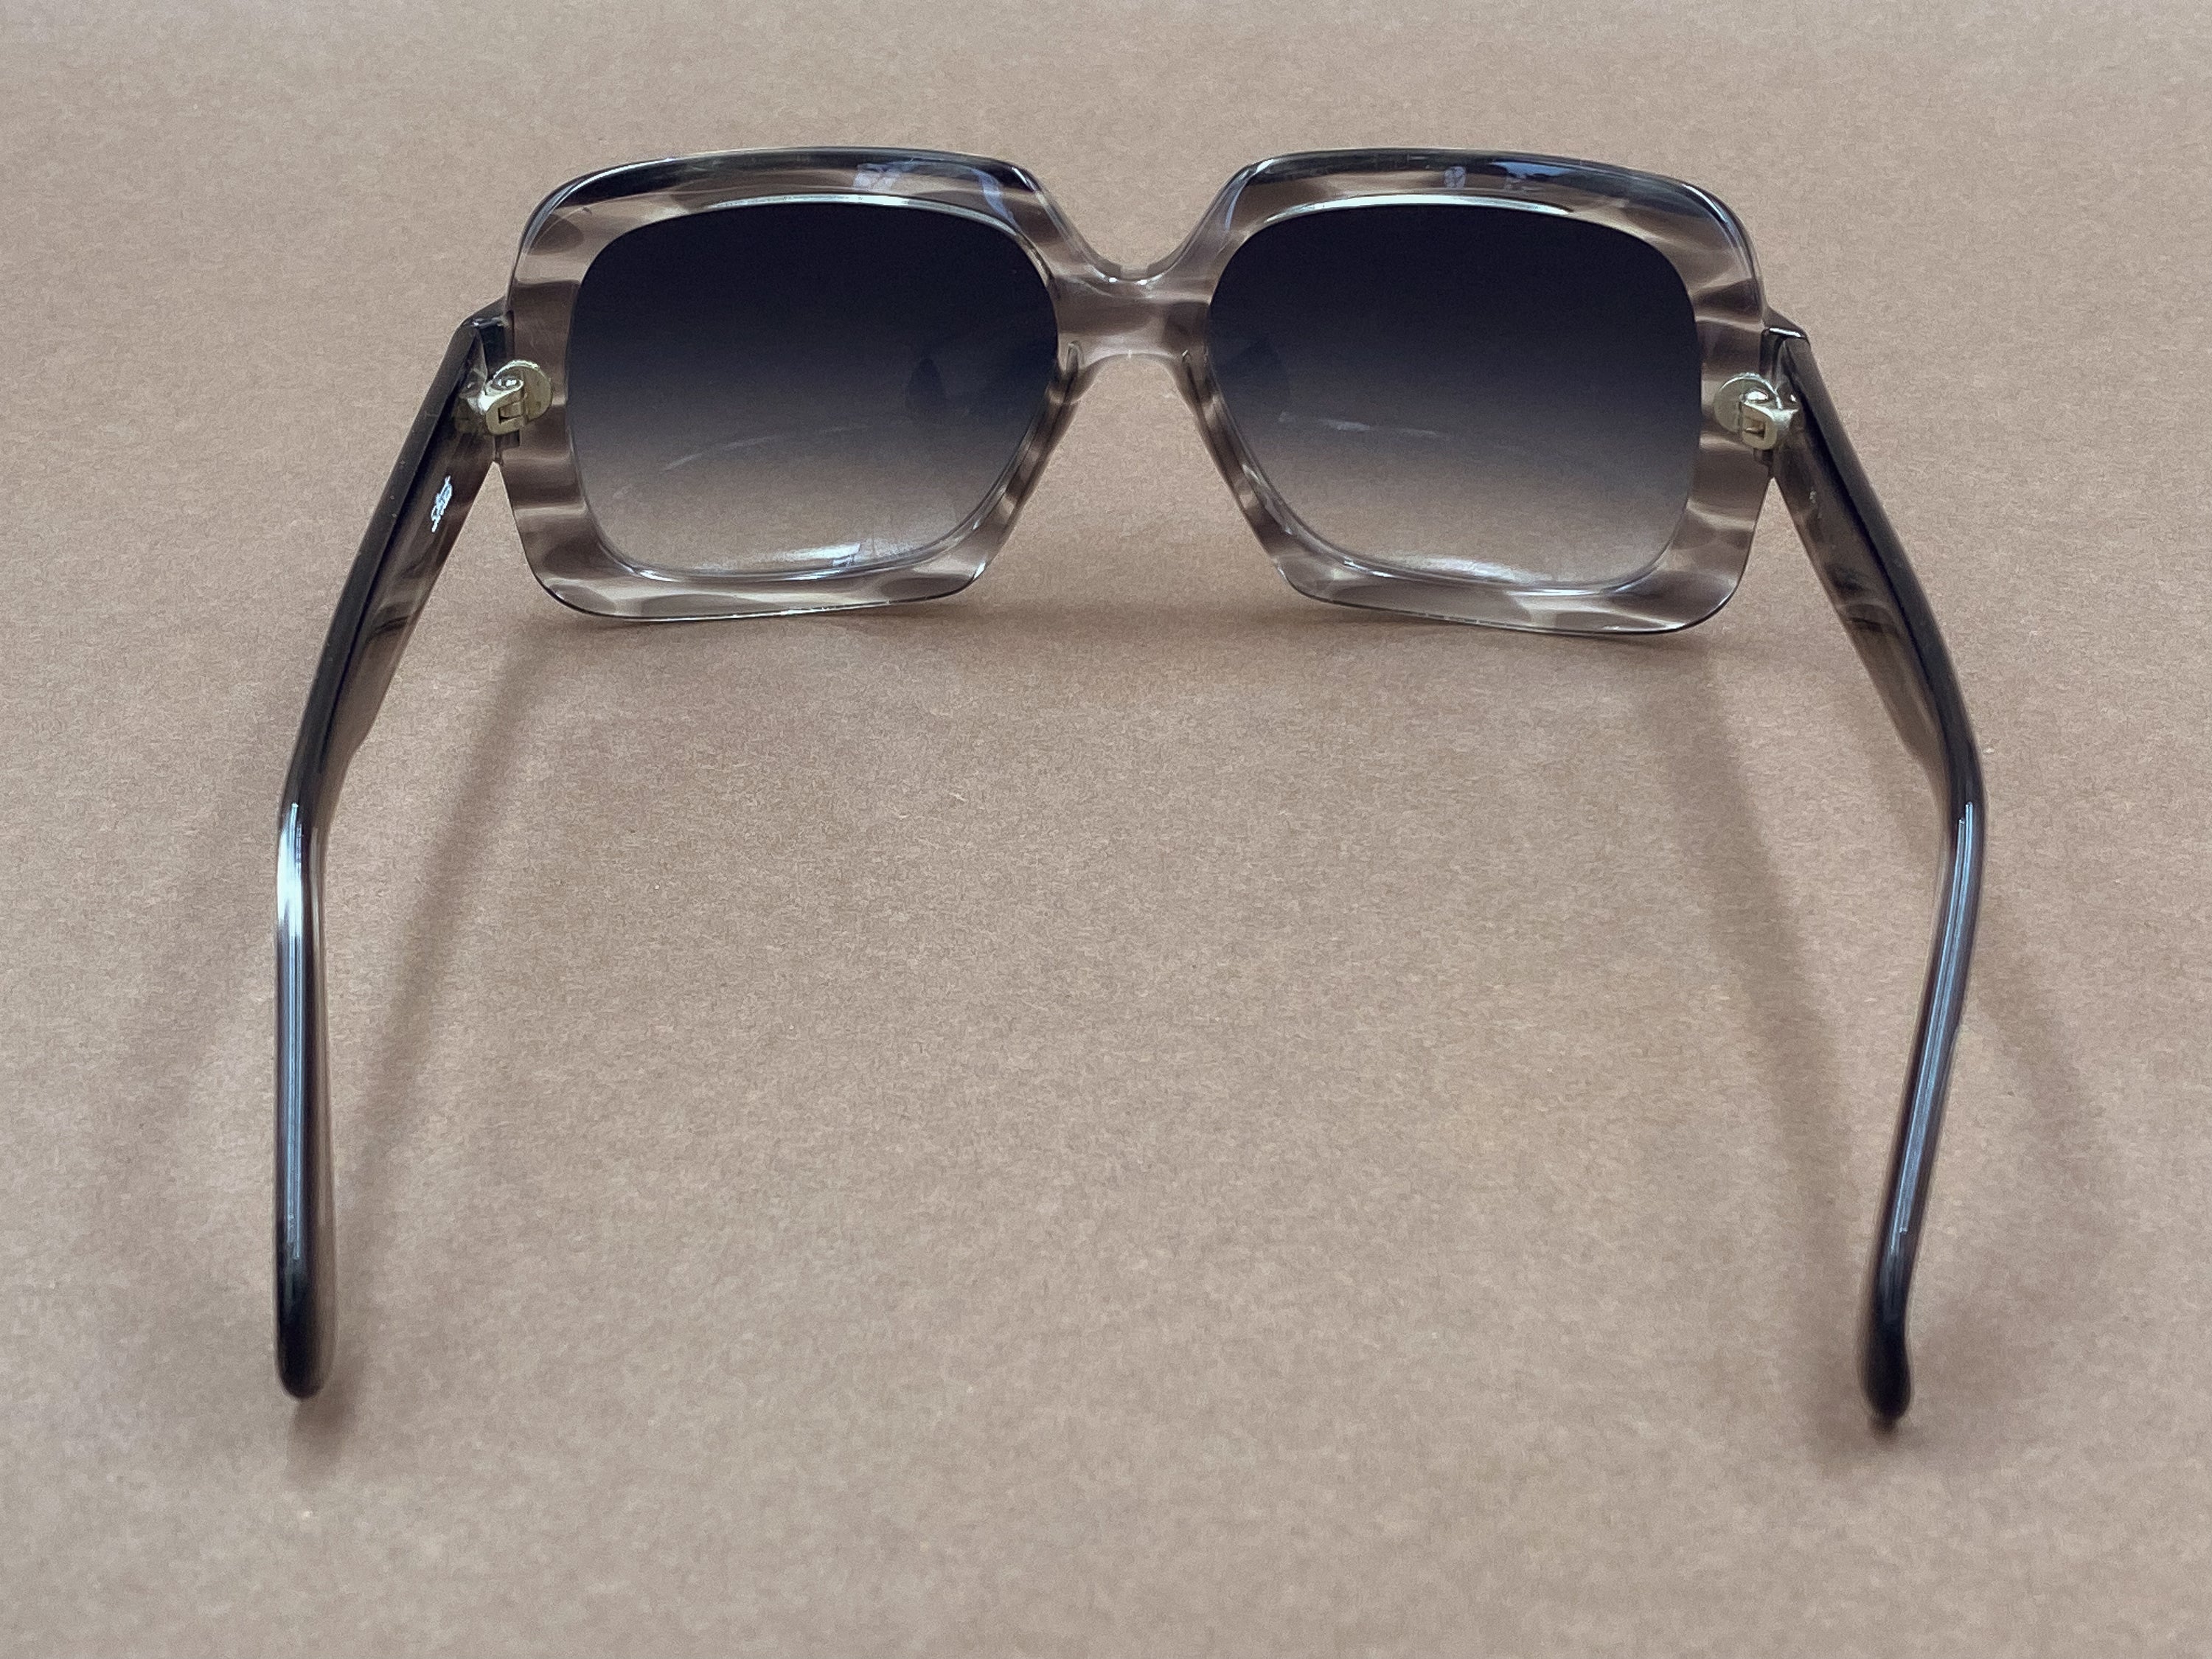 Silhouette 227 sunglasses